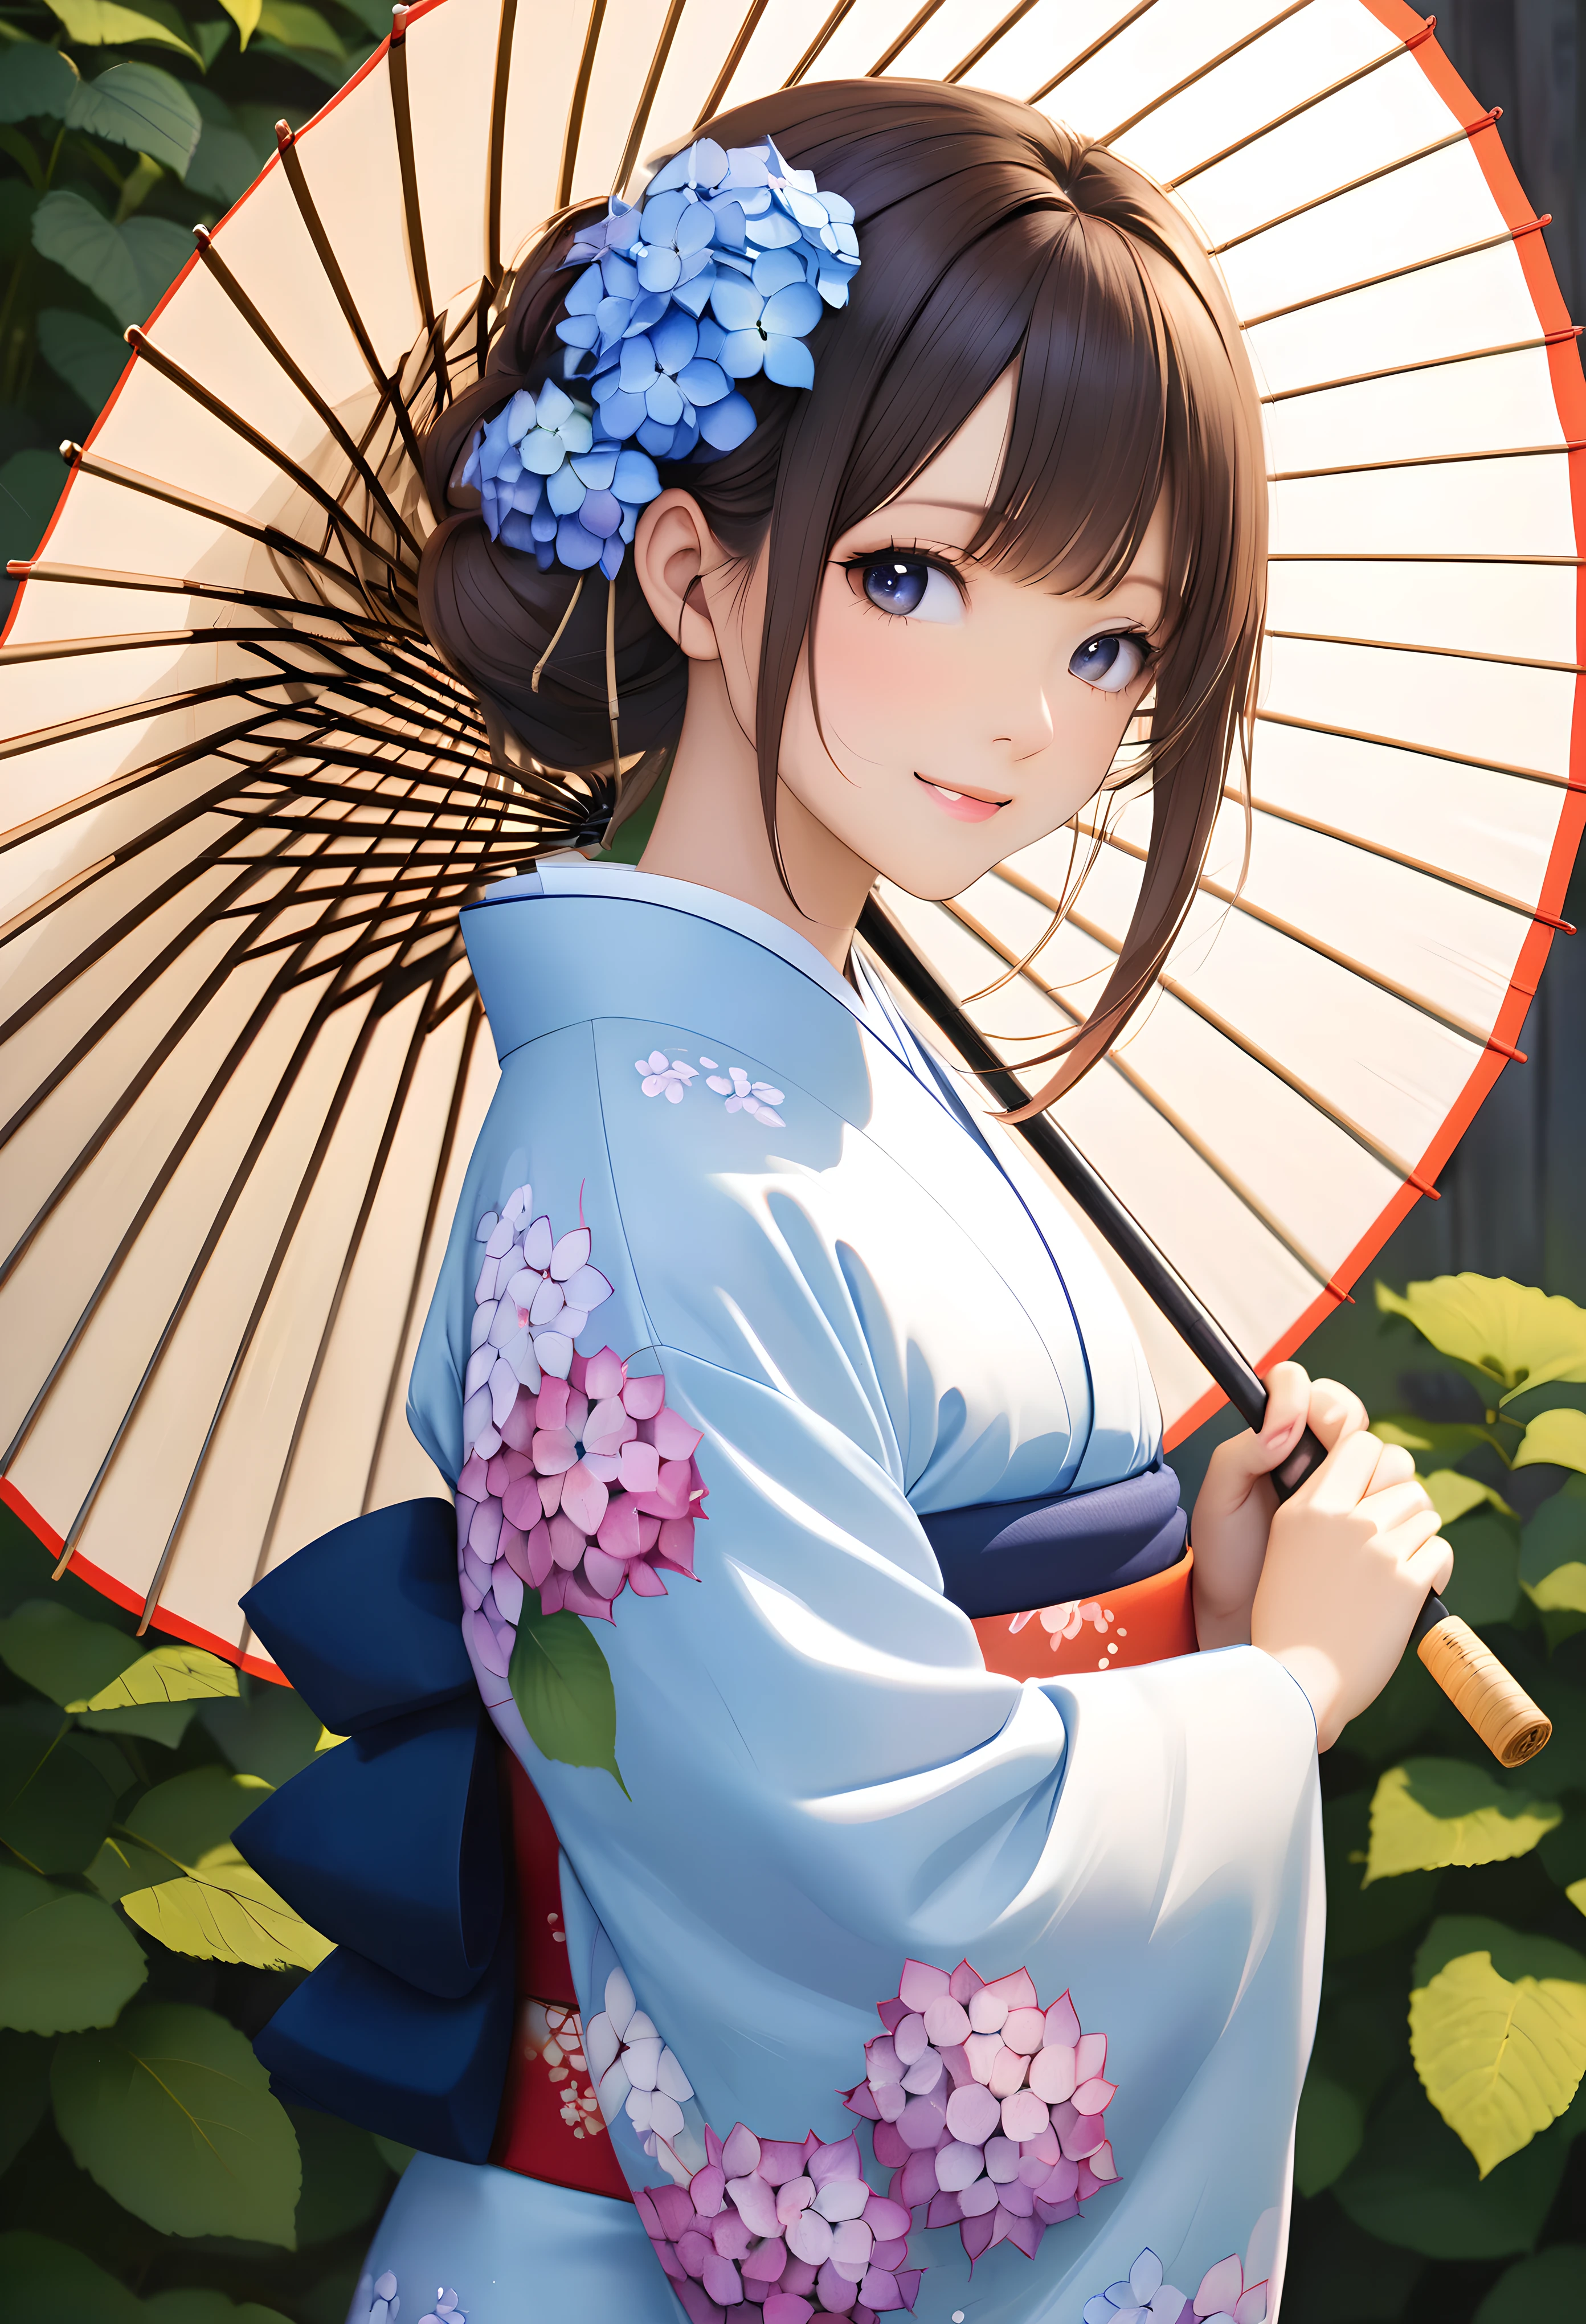 Einen japanischen Regenschirm halten, PAUSE Japanische Kleidung tragen, BREAK Hortensien, die das Motiv hervorheben, 